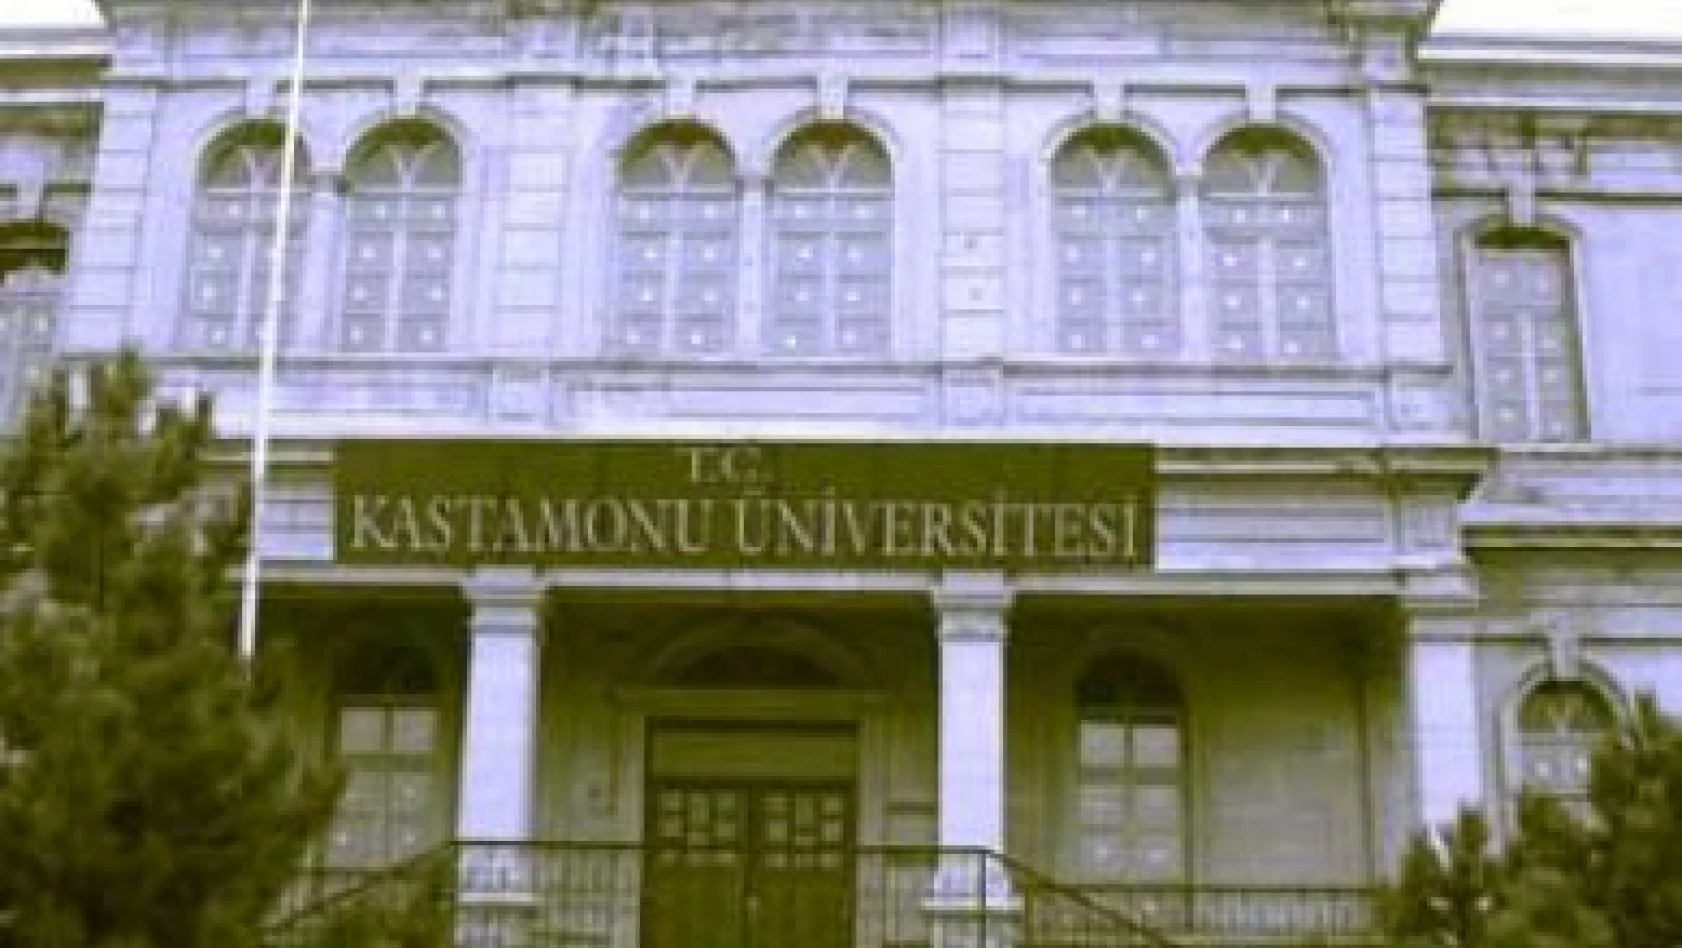 Kastamonu Üniversitesi sinemada ödül aldı